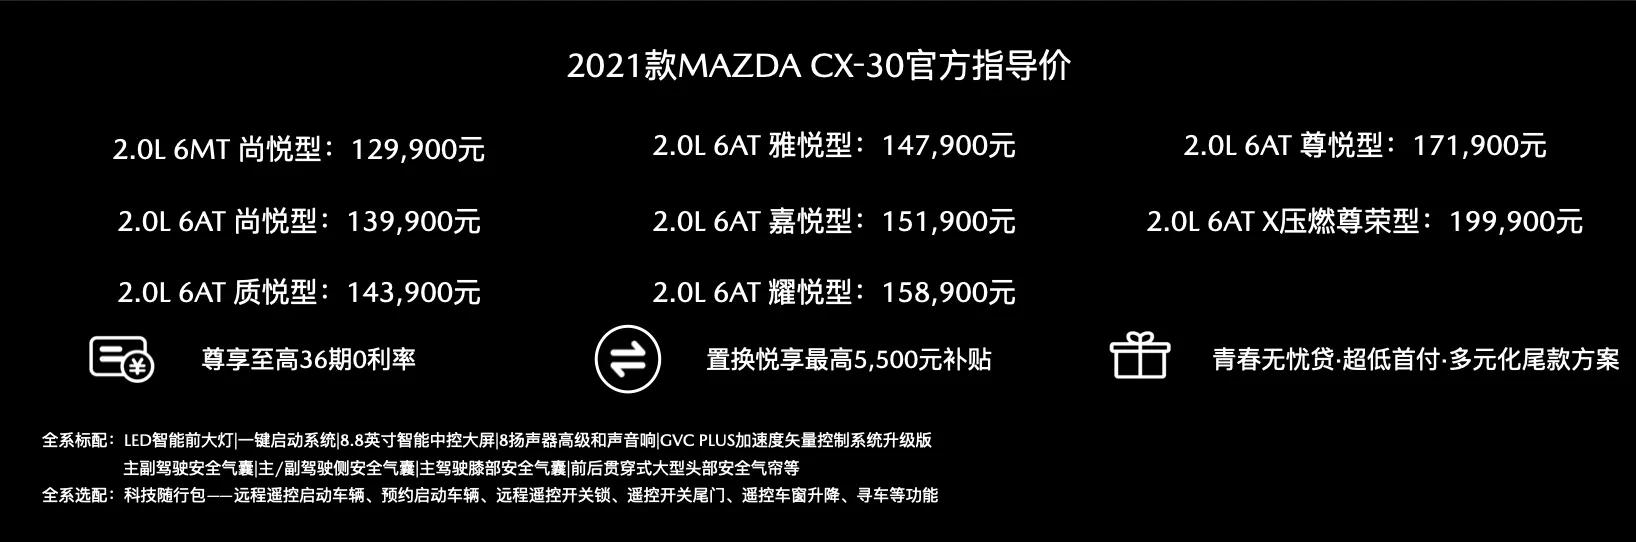 璀璨星空 悦马共行 长安马自达2021粉丝嘉年华盛大启幕2021款MAZDA CX-30价值升级悦然登场